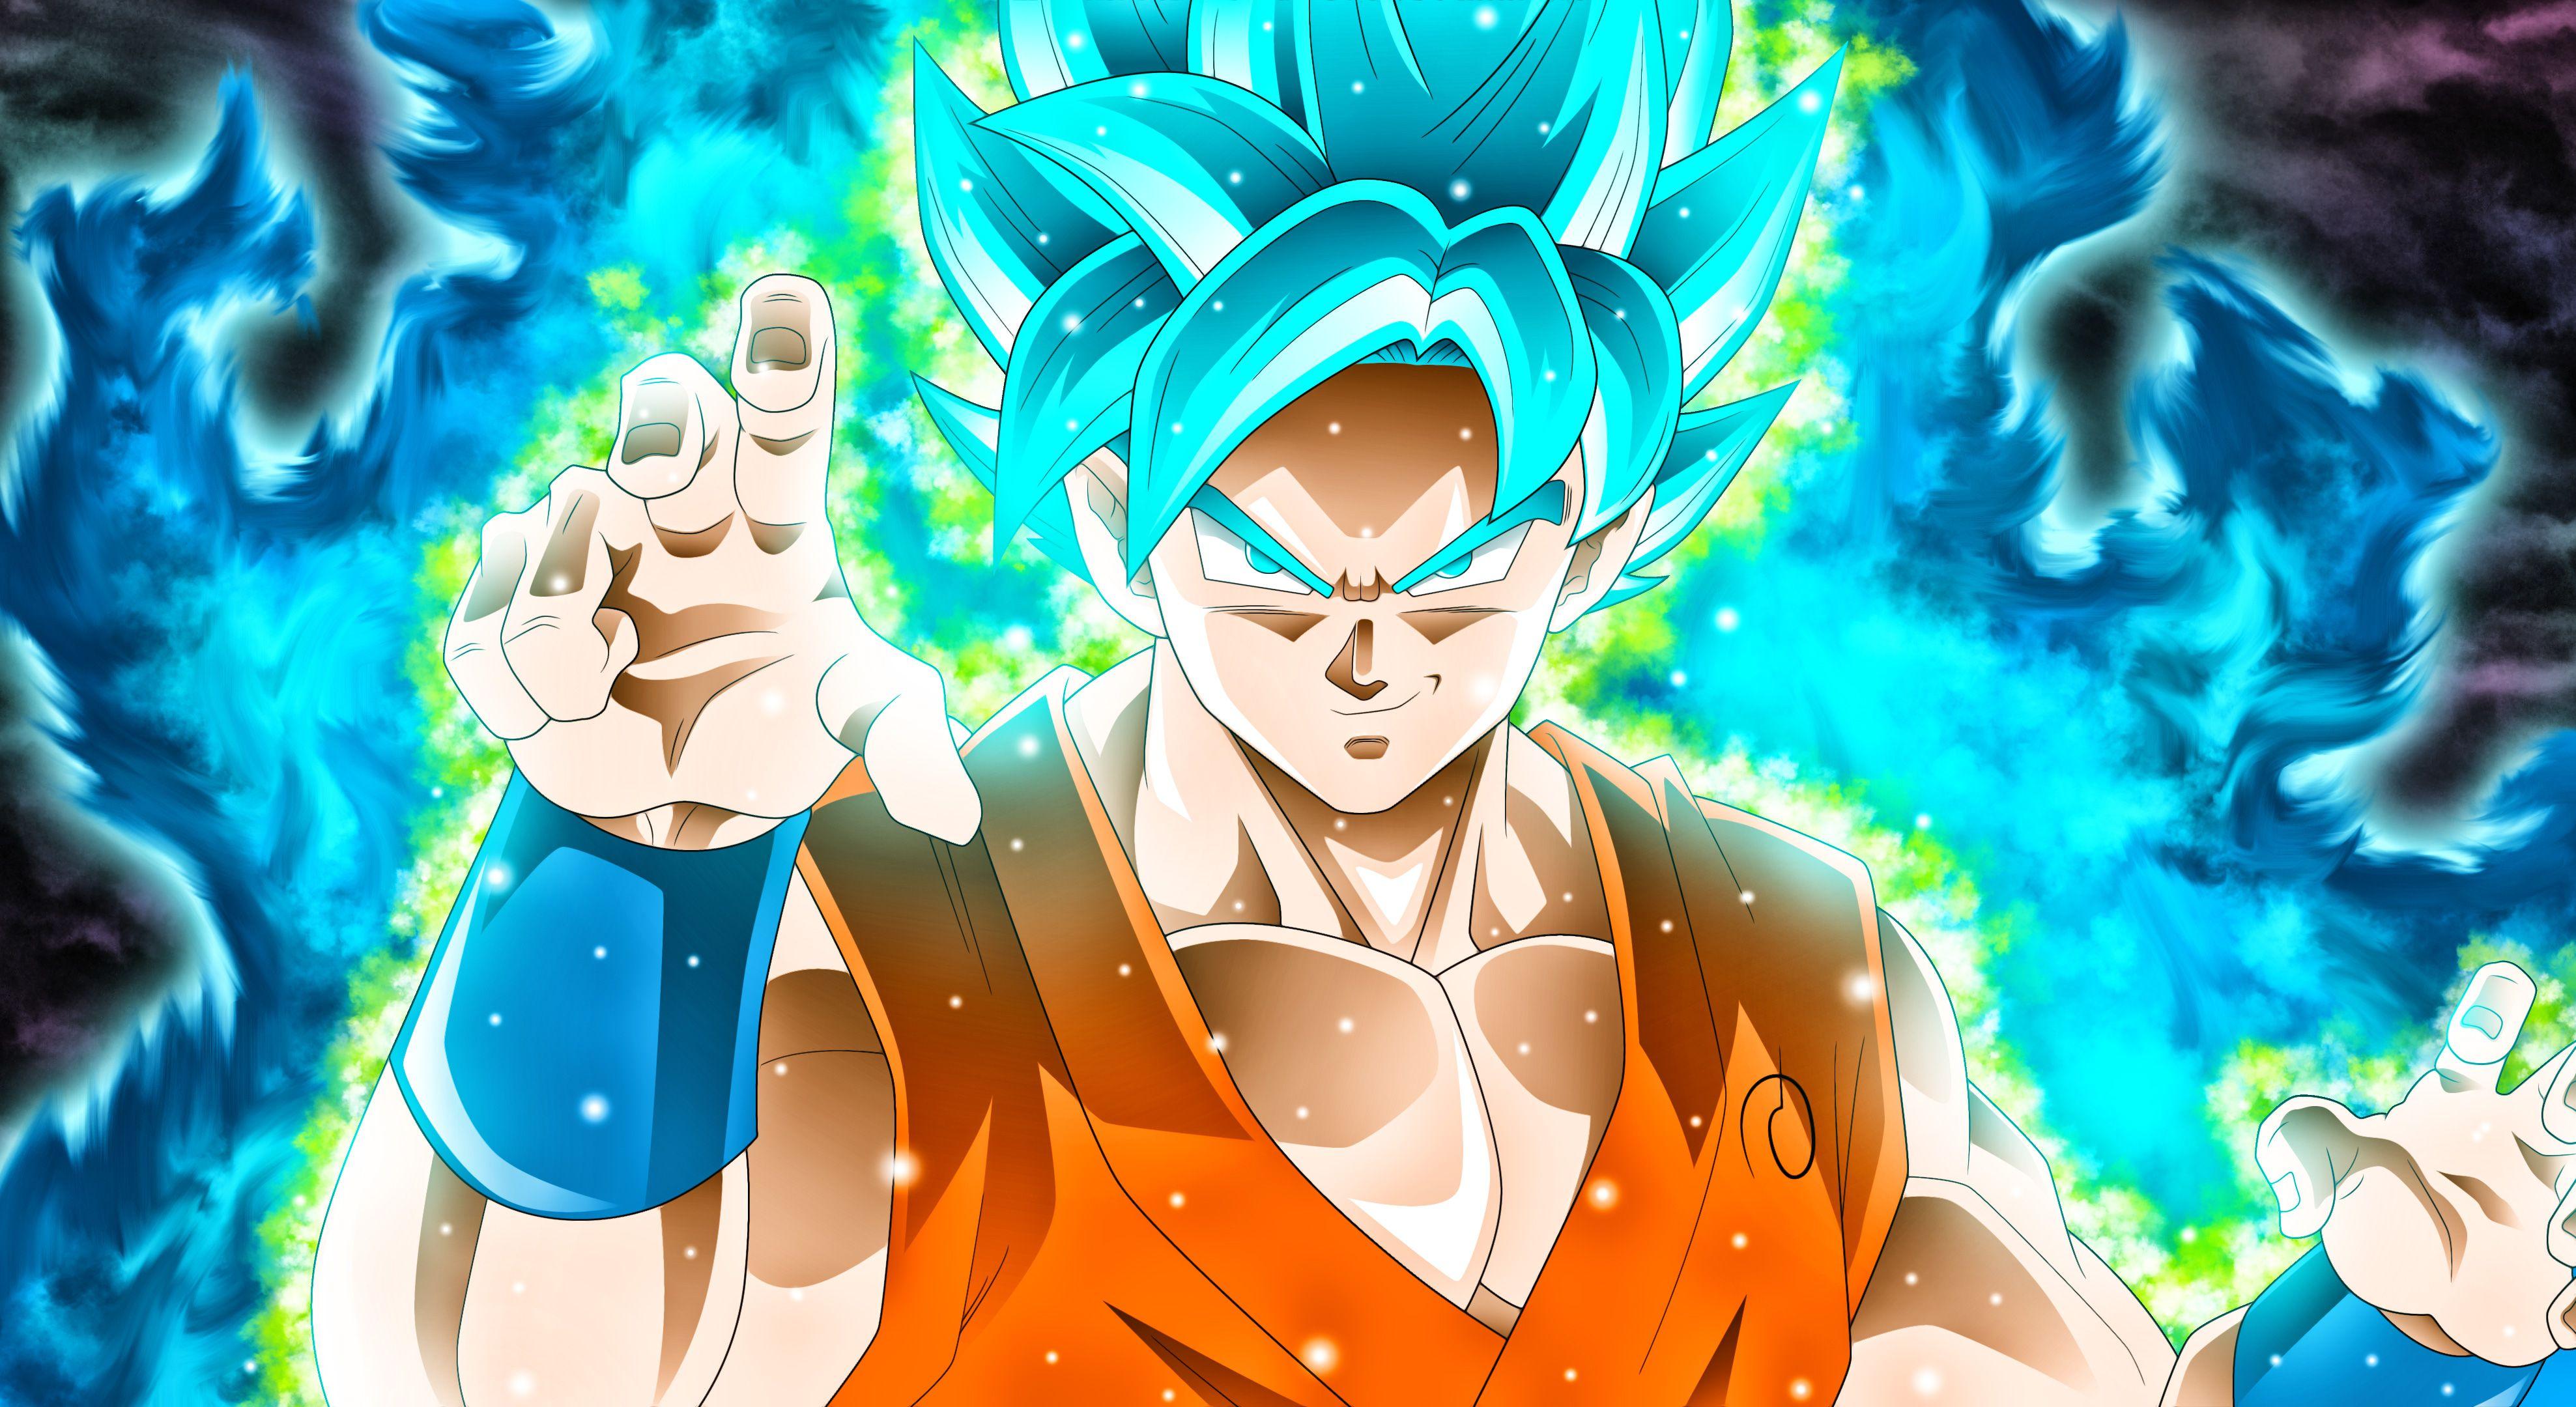 Goku Dragon Ball Super Wallpapers - Top Những Hình Ảnh Đẹp